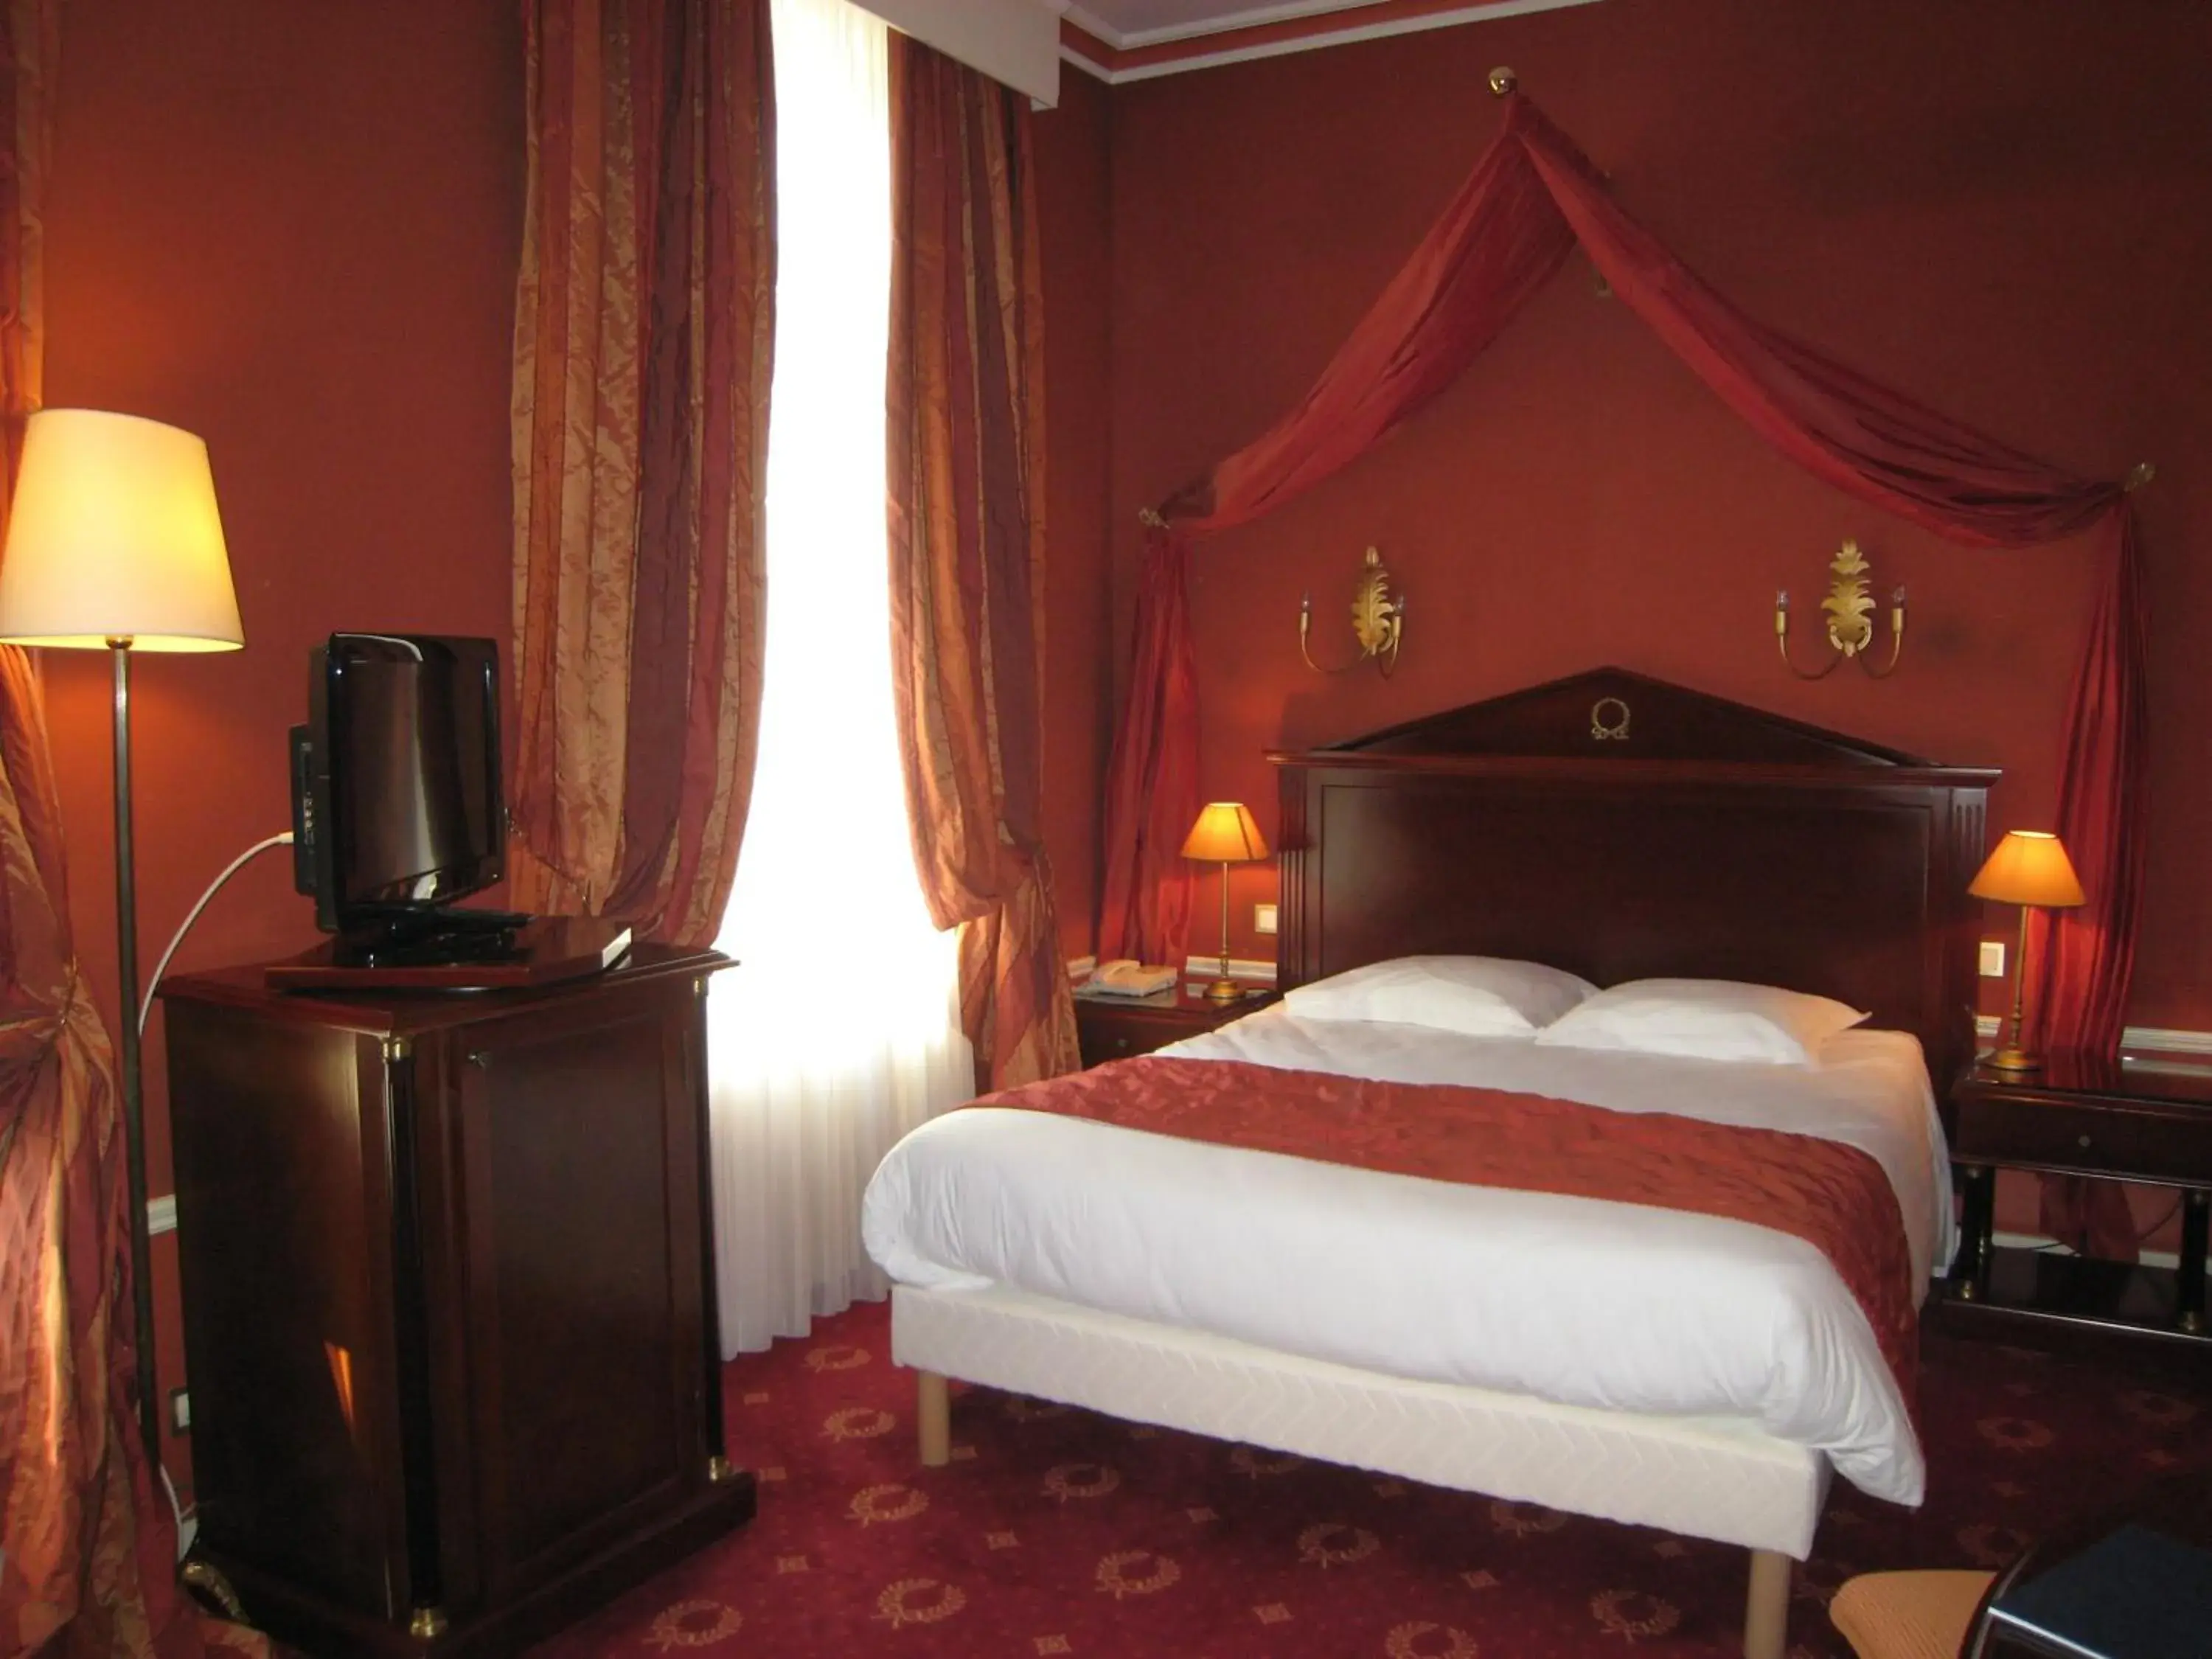 Bedroom, Room Photo in Hôtel Les Maréchaux